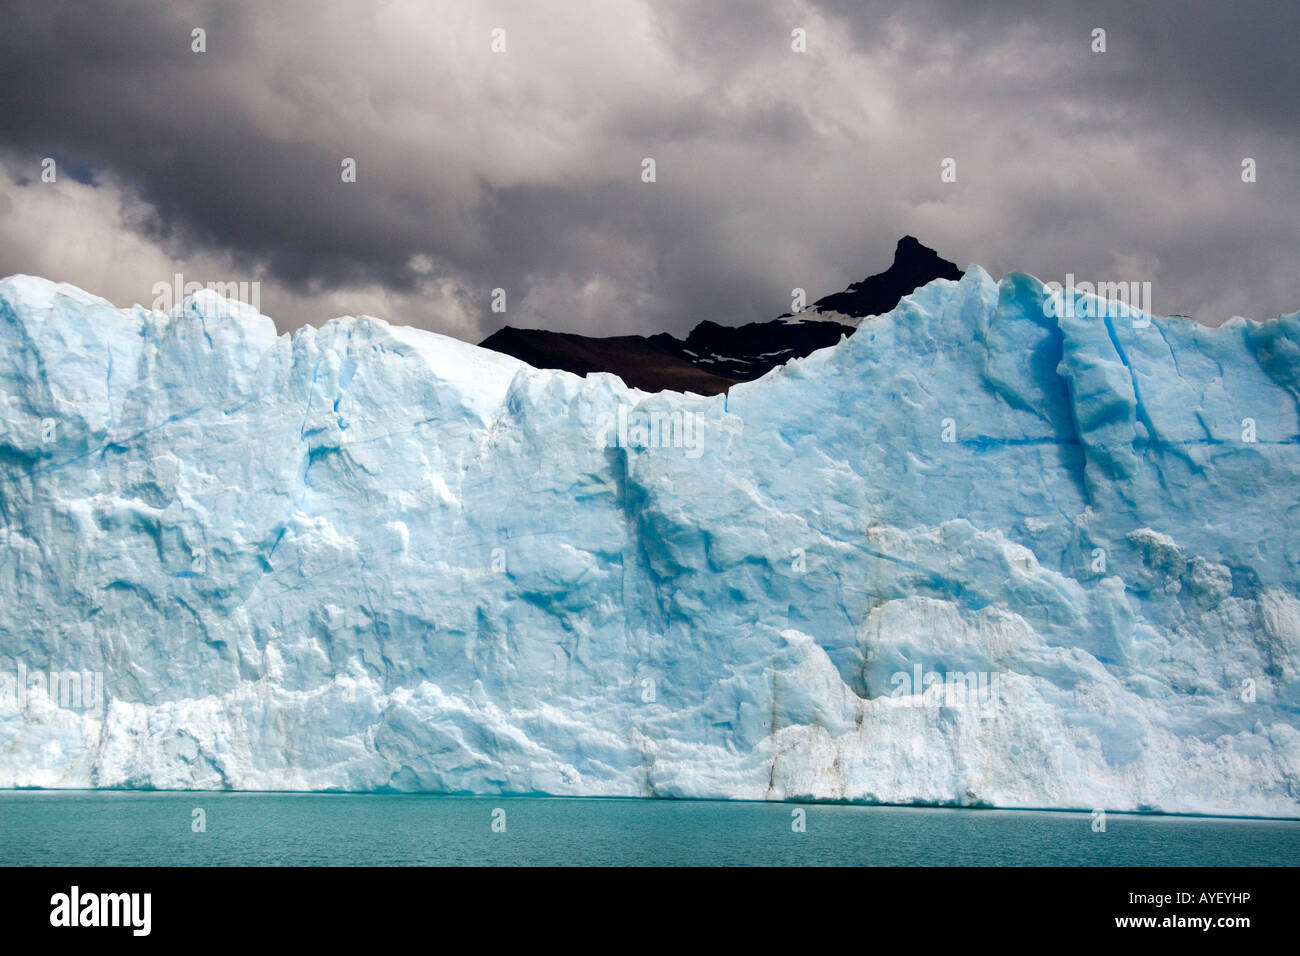 The Perito Moreno Glacier located in the Los Glaciares National Park in Patagonia Argentina Stock Photo